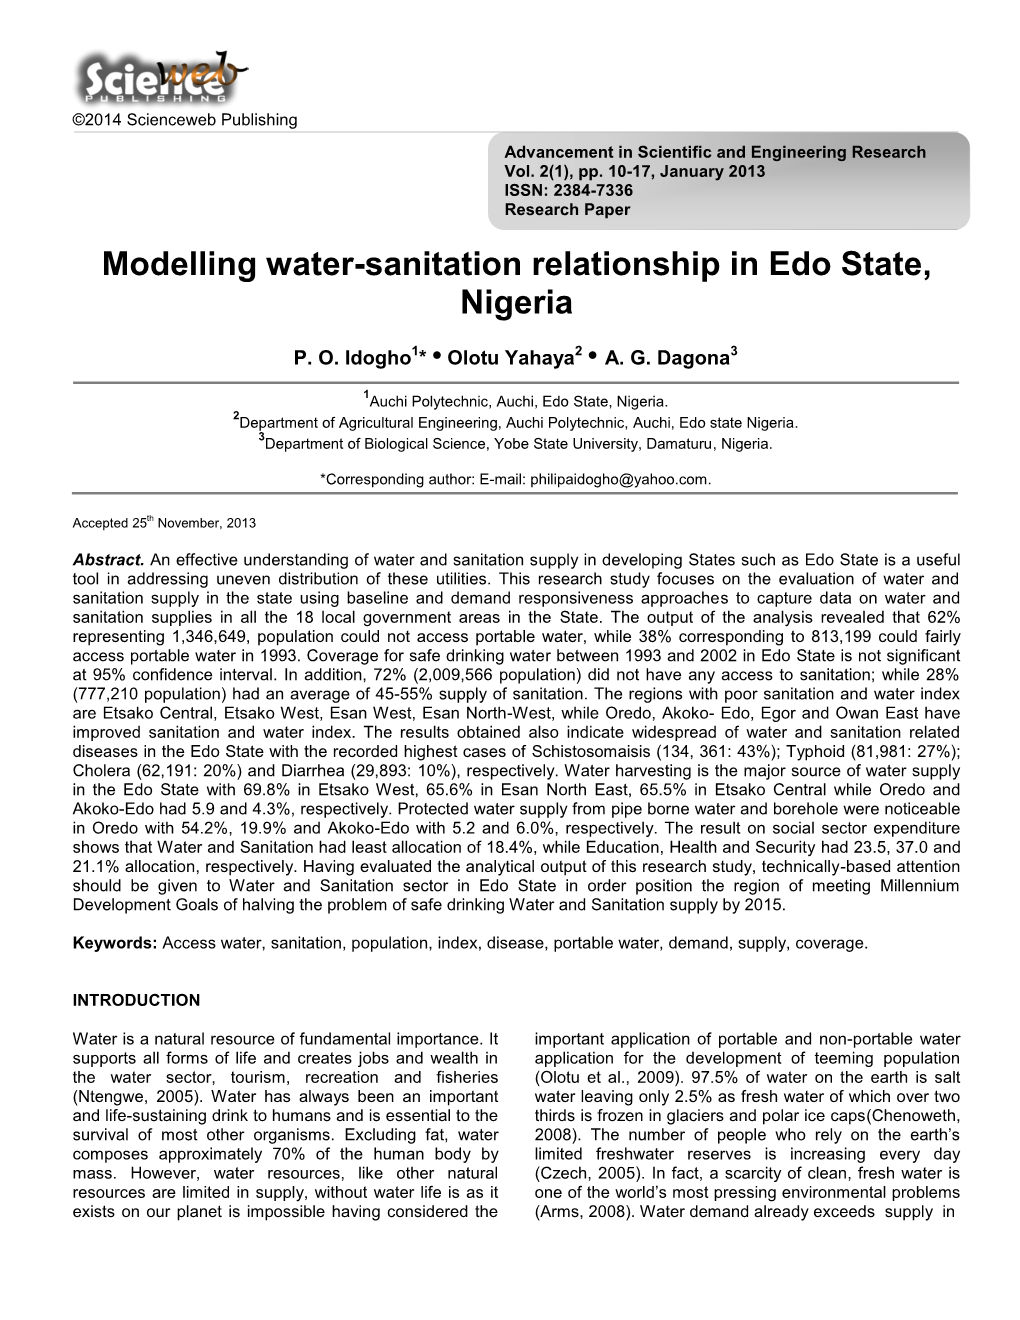 Modelling Water-Sanitation Relationship in Edo State, Nigeria